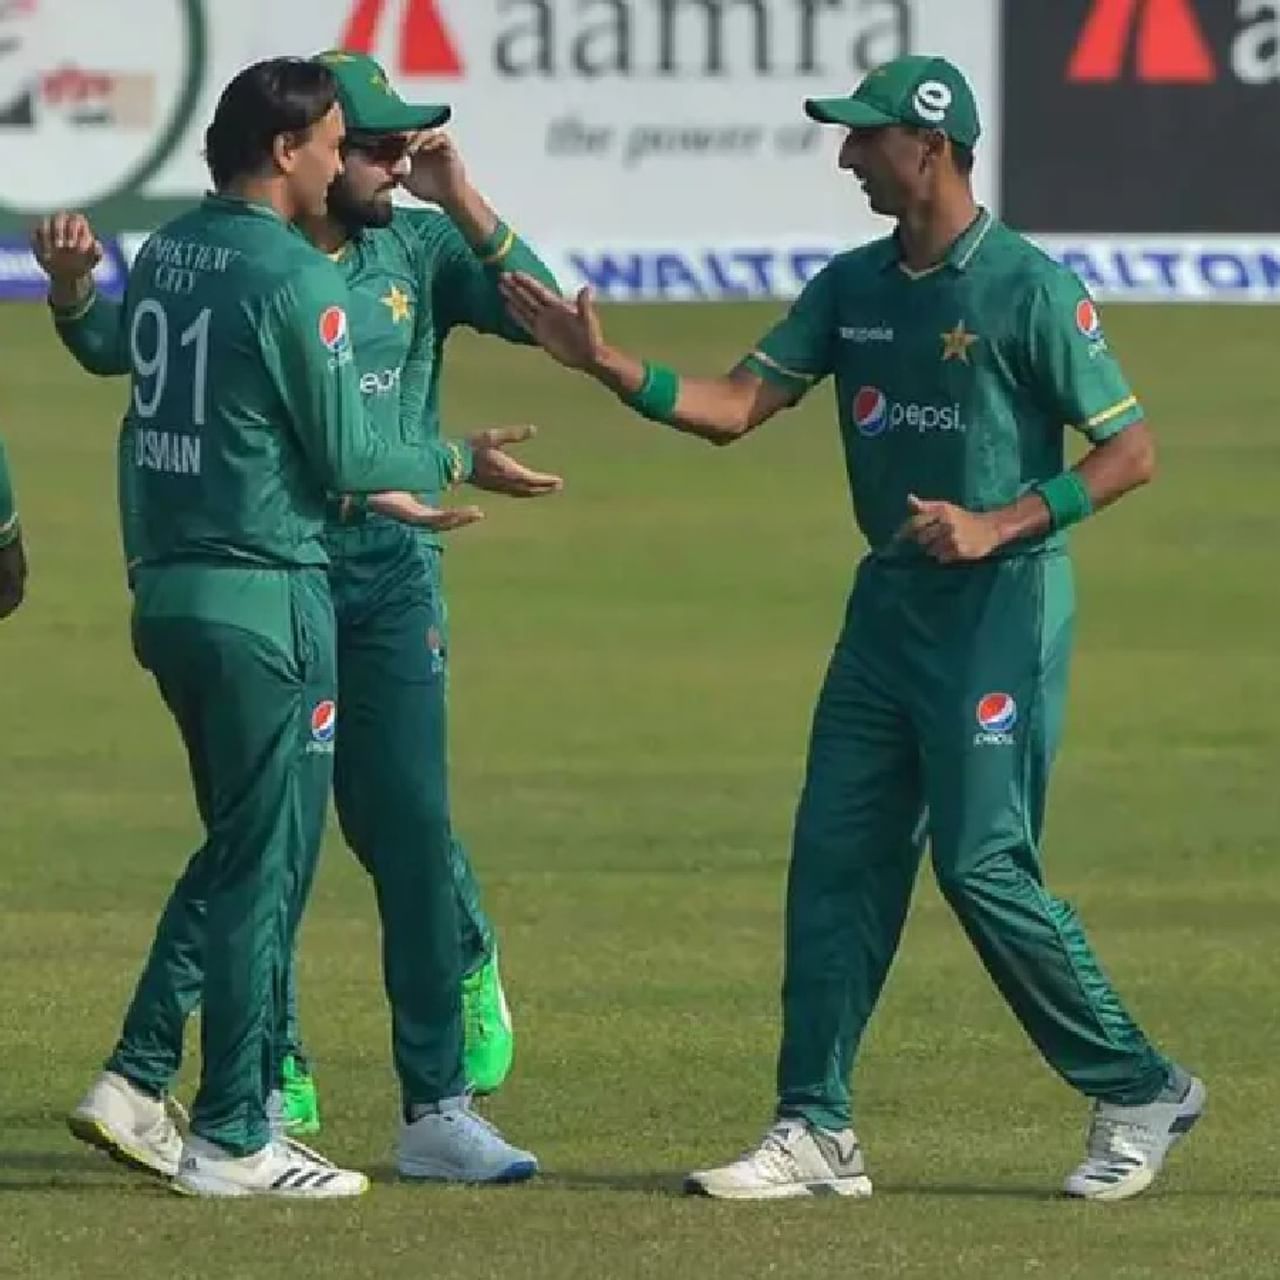 पाकिस्तानच्या T20 विश्वचषक संघात सचिननं धुळ चारलेल्या क्रिकेटरच्या मुलाला स्थान मिळालं आहे. विशेष म्हणजे वडिलांच्या 66व्या वाढदिवसाला मुलाला टी-20 वर्ल्डकपचे तिकीट मिळाले आहे. हा दिवस म्हणजे त्याच्या वडिलांचा वाढदिवस त्याच्यासाठी लकी डे ठरला आहे.